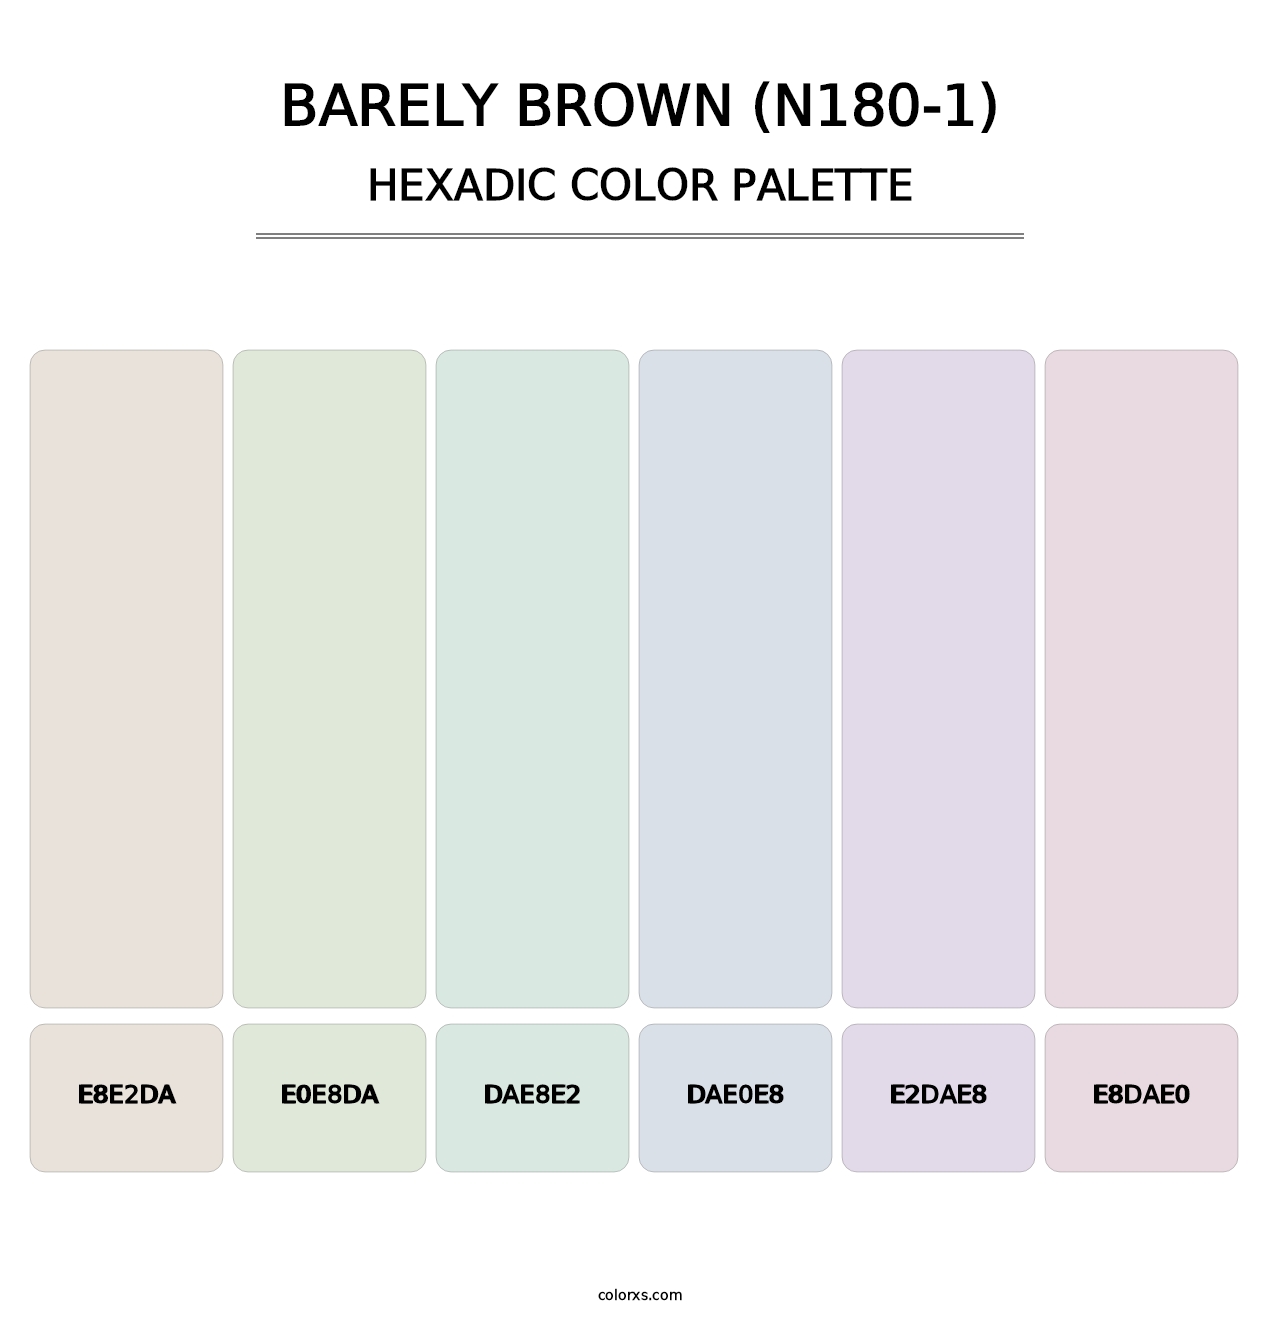 Barely Brown (N180-1) - Hexadic Color Palette